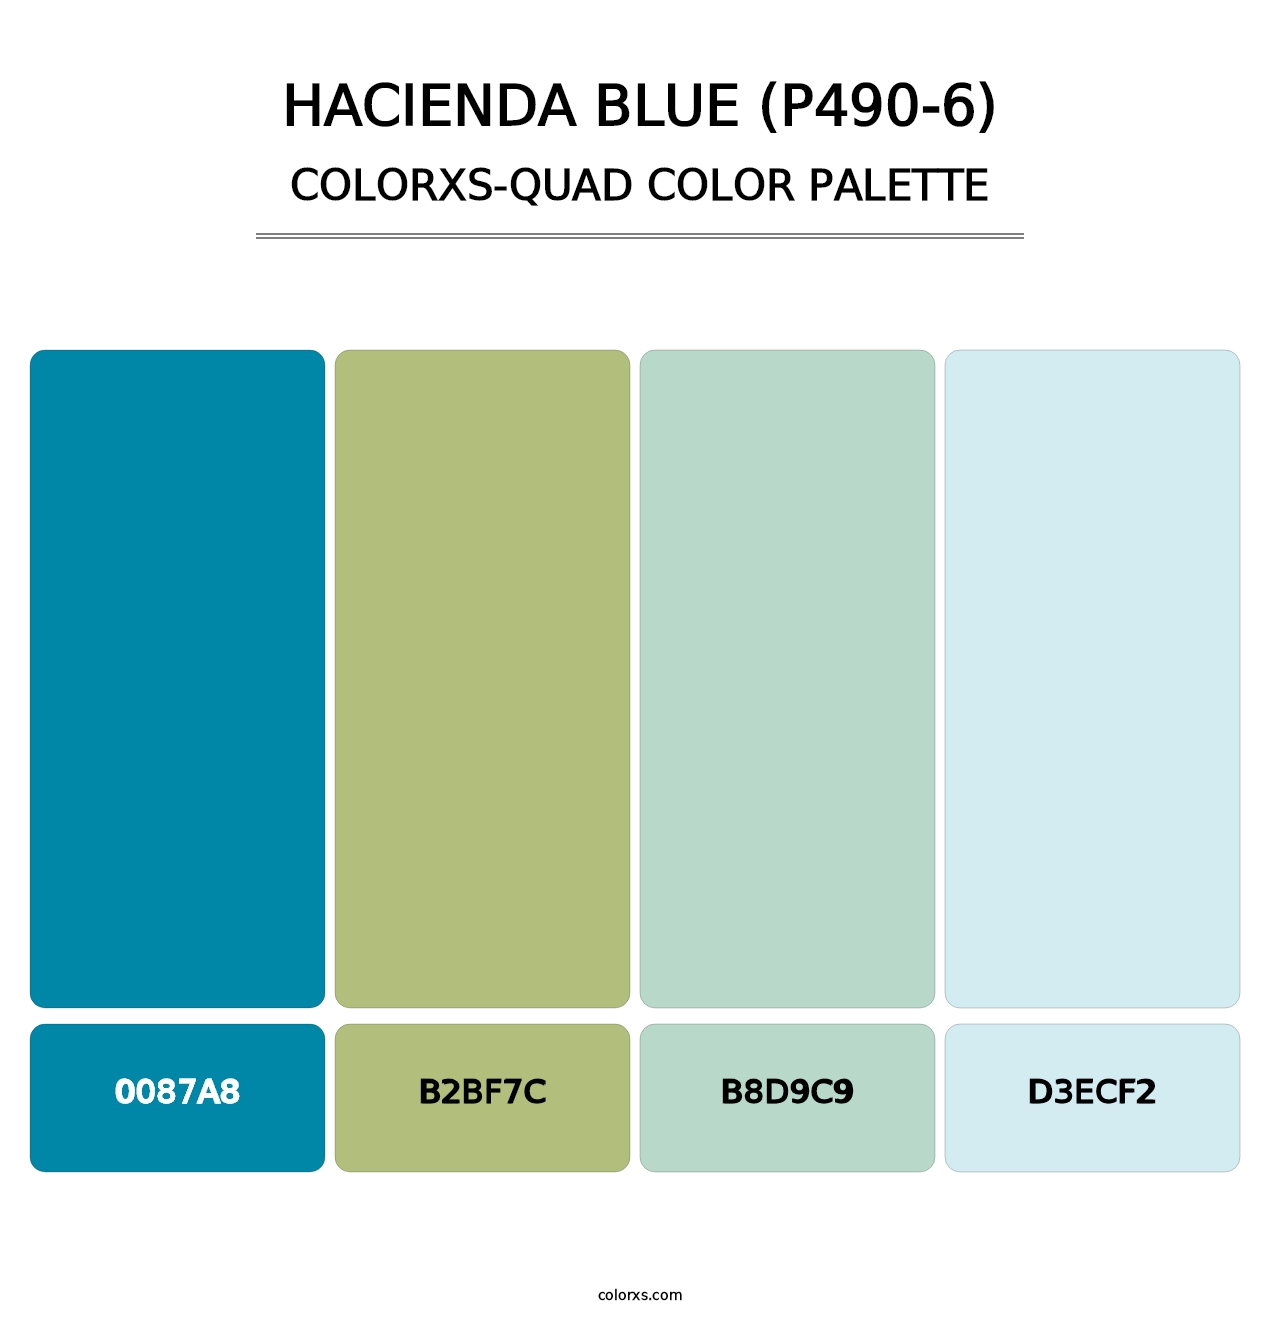 Hacienda Blue (P490-6) - Colorxs Quad Palette